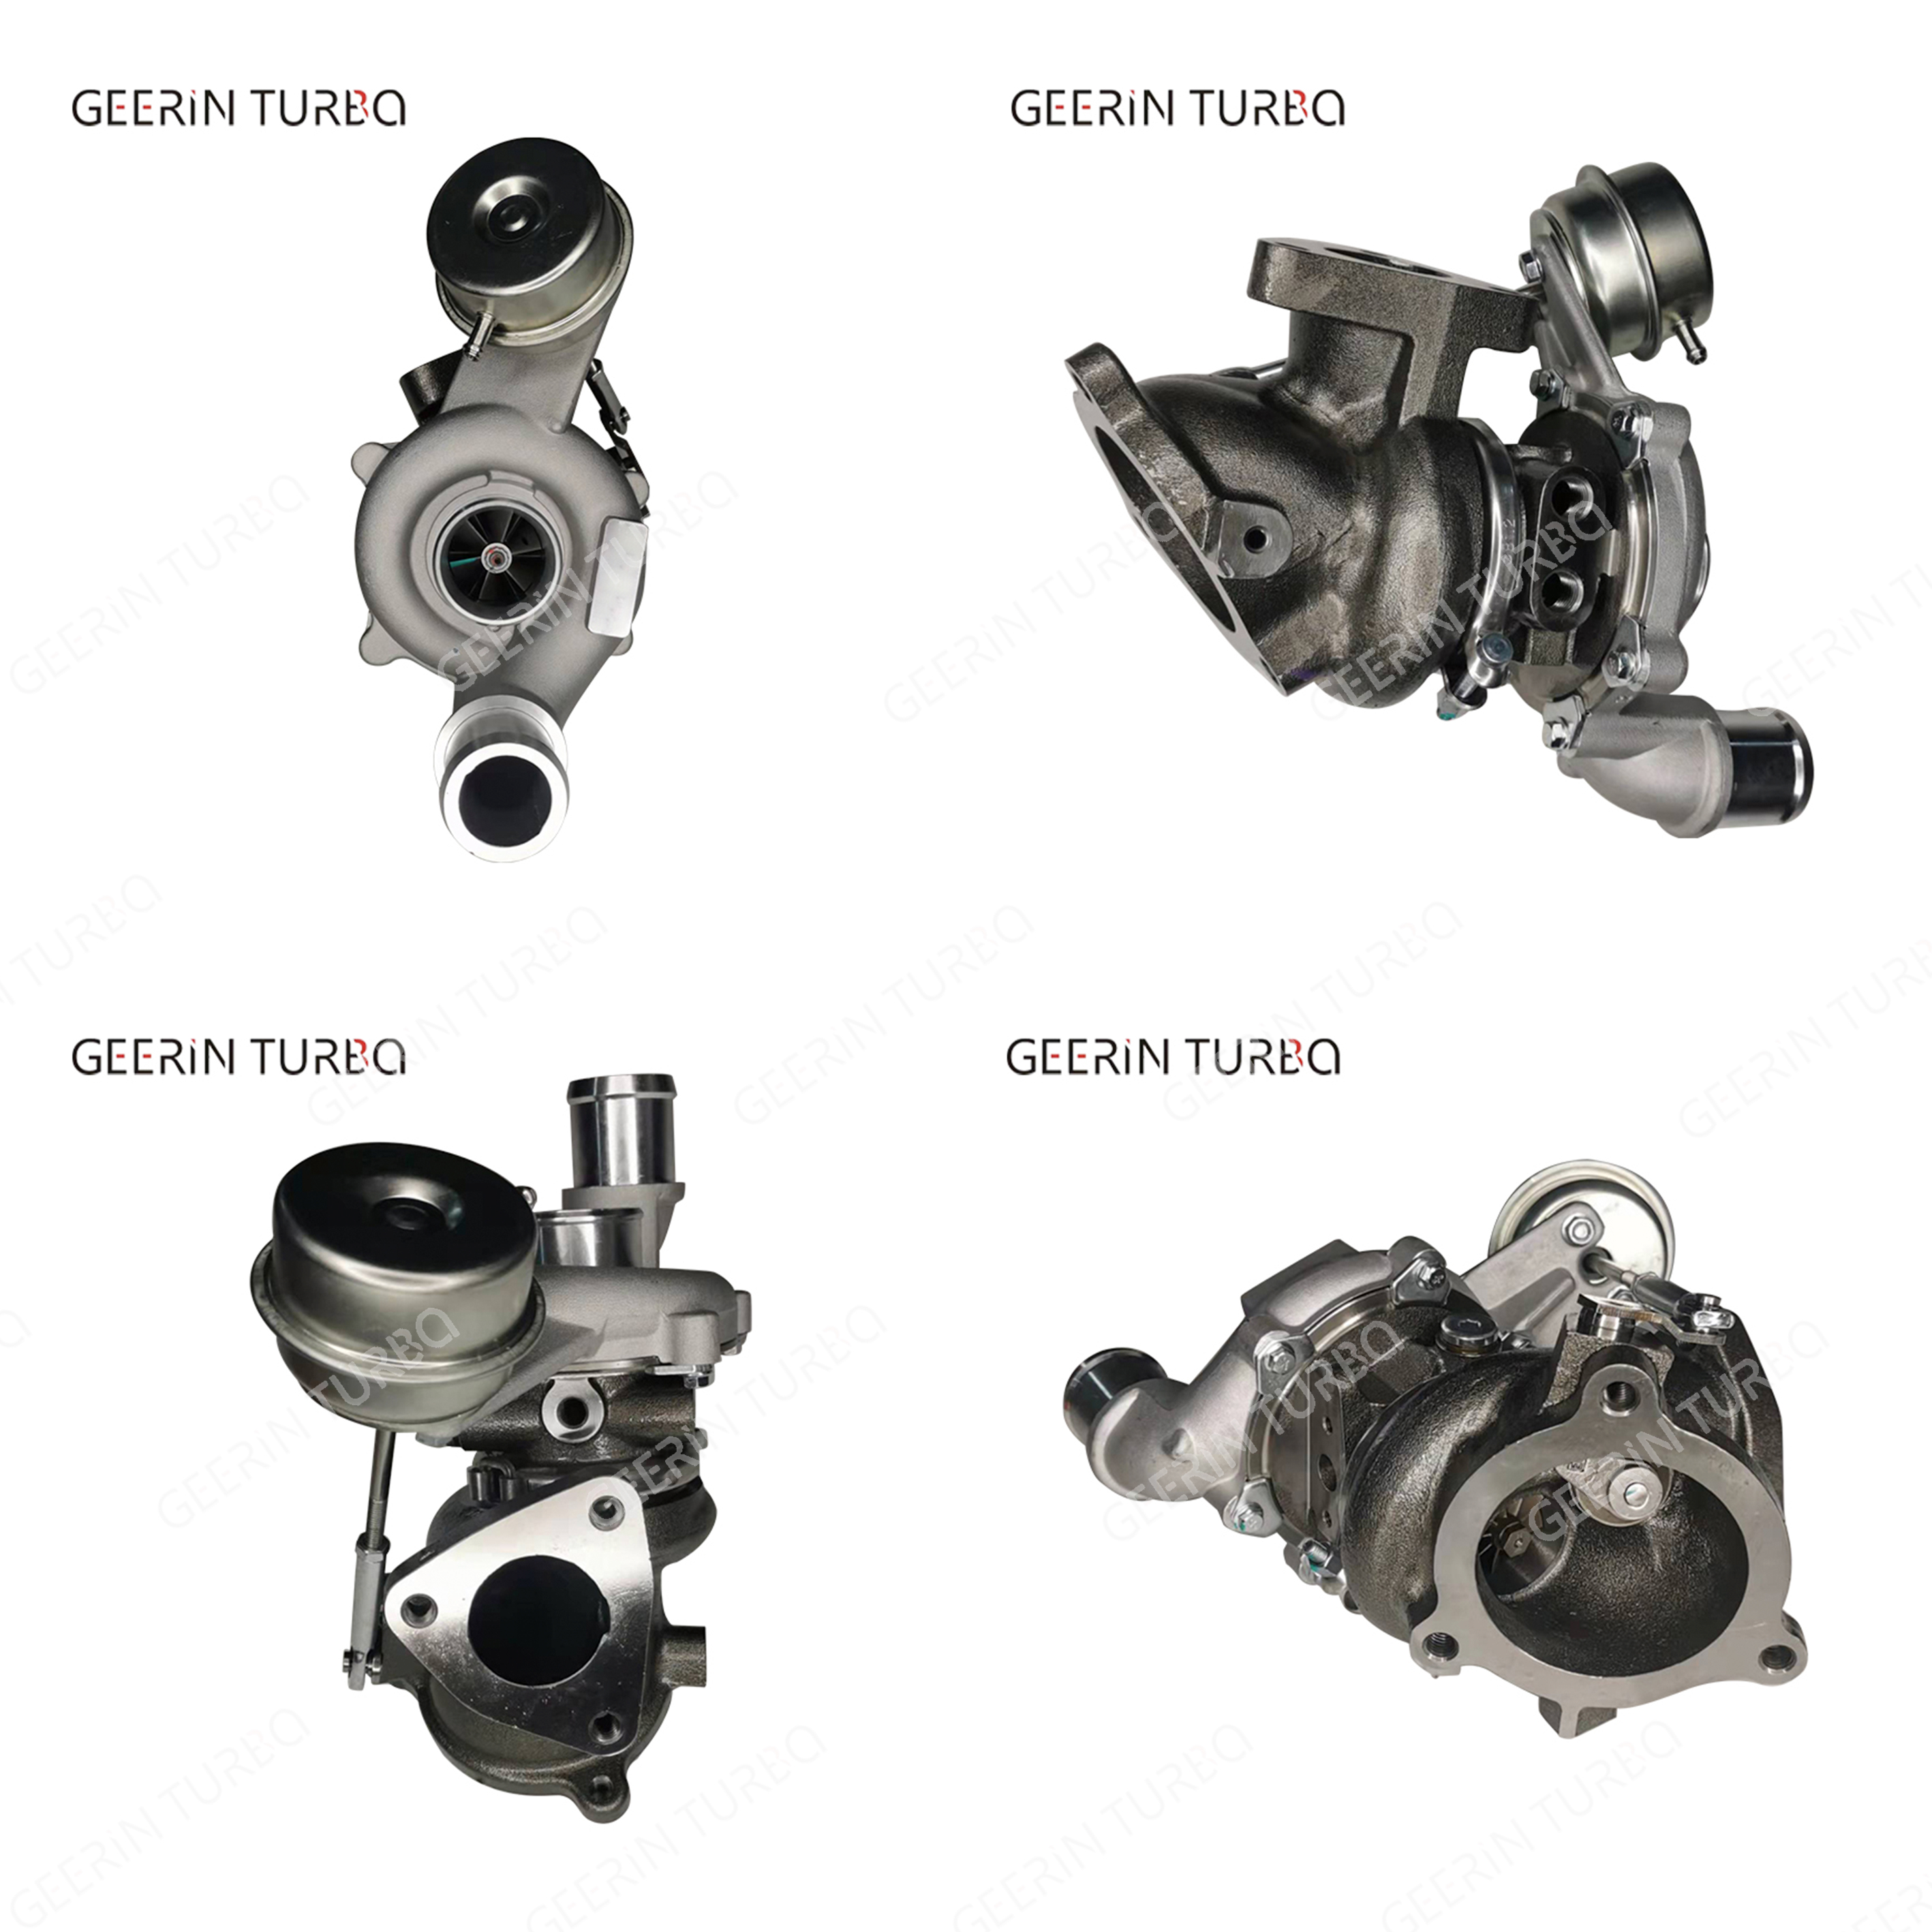 GT1549S 790317-0001 Ford 3.5L için Turbo Şarj Turboşarjı satın al,GT1549S 790317-0001 Ford 3.5L için Turbo Şarj Turboşarjı Fiyatlar,GT1549S 790317-0001 Ford 3.5L için Turbo Şarj Turboşarjı Markalar,GT1549S 790317-0001 Ford 3.5L için Turbo Şarj Turboşarjı Üretici,GT1549S 790317-0001 Ford 3.5L için Turbo Şarj Turboşarjı Alıntılar,GT1549S 790317-0001 Ford 3.5L için Turbo Şarj Turboşarjı Şirket,